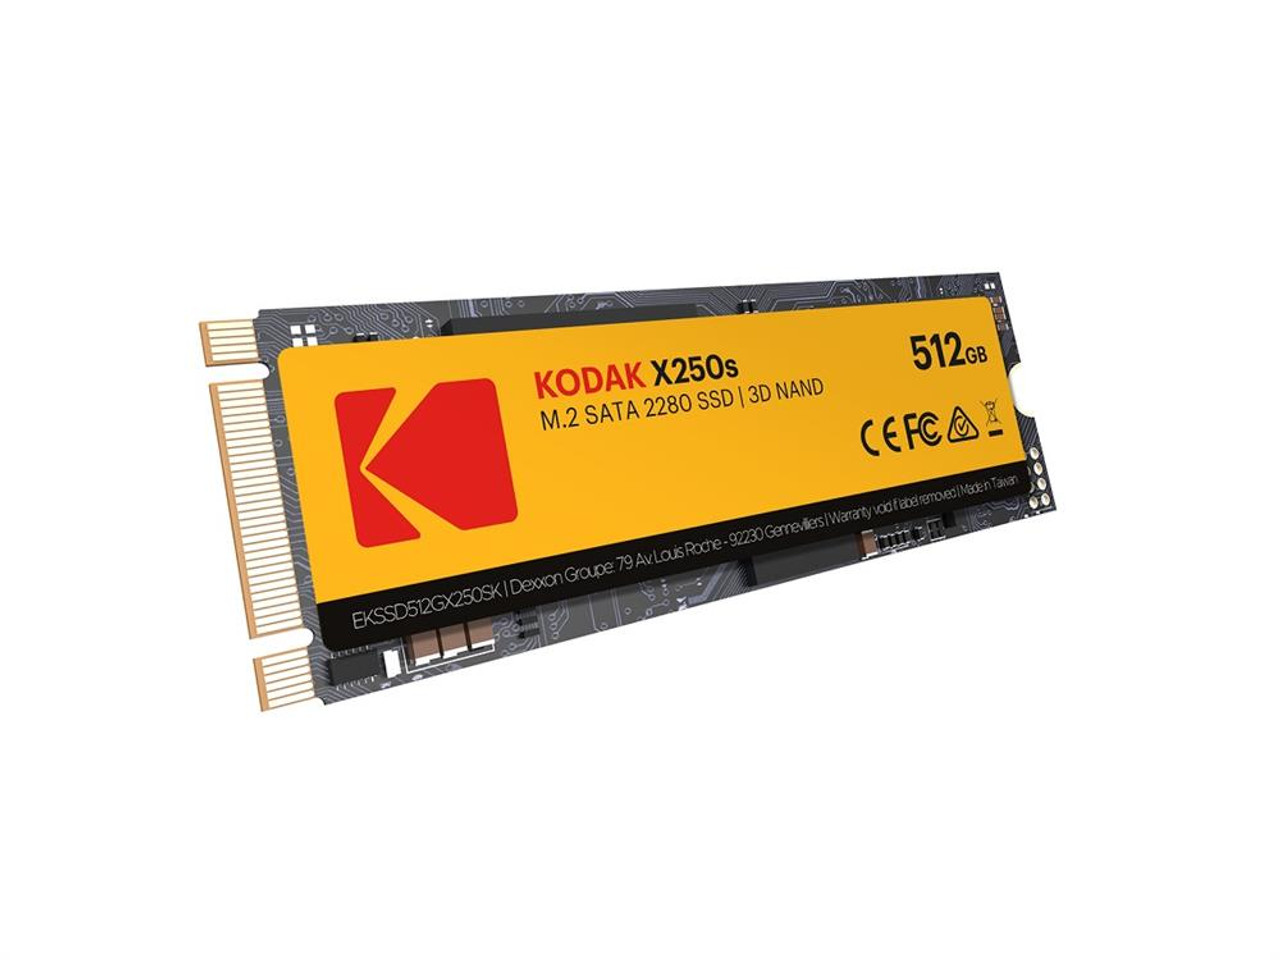 Kodak X250 Series 512GB TLC SATA 6Gbps M.2 2280 Internal Solid State Drive (SSD)